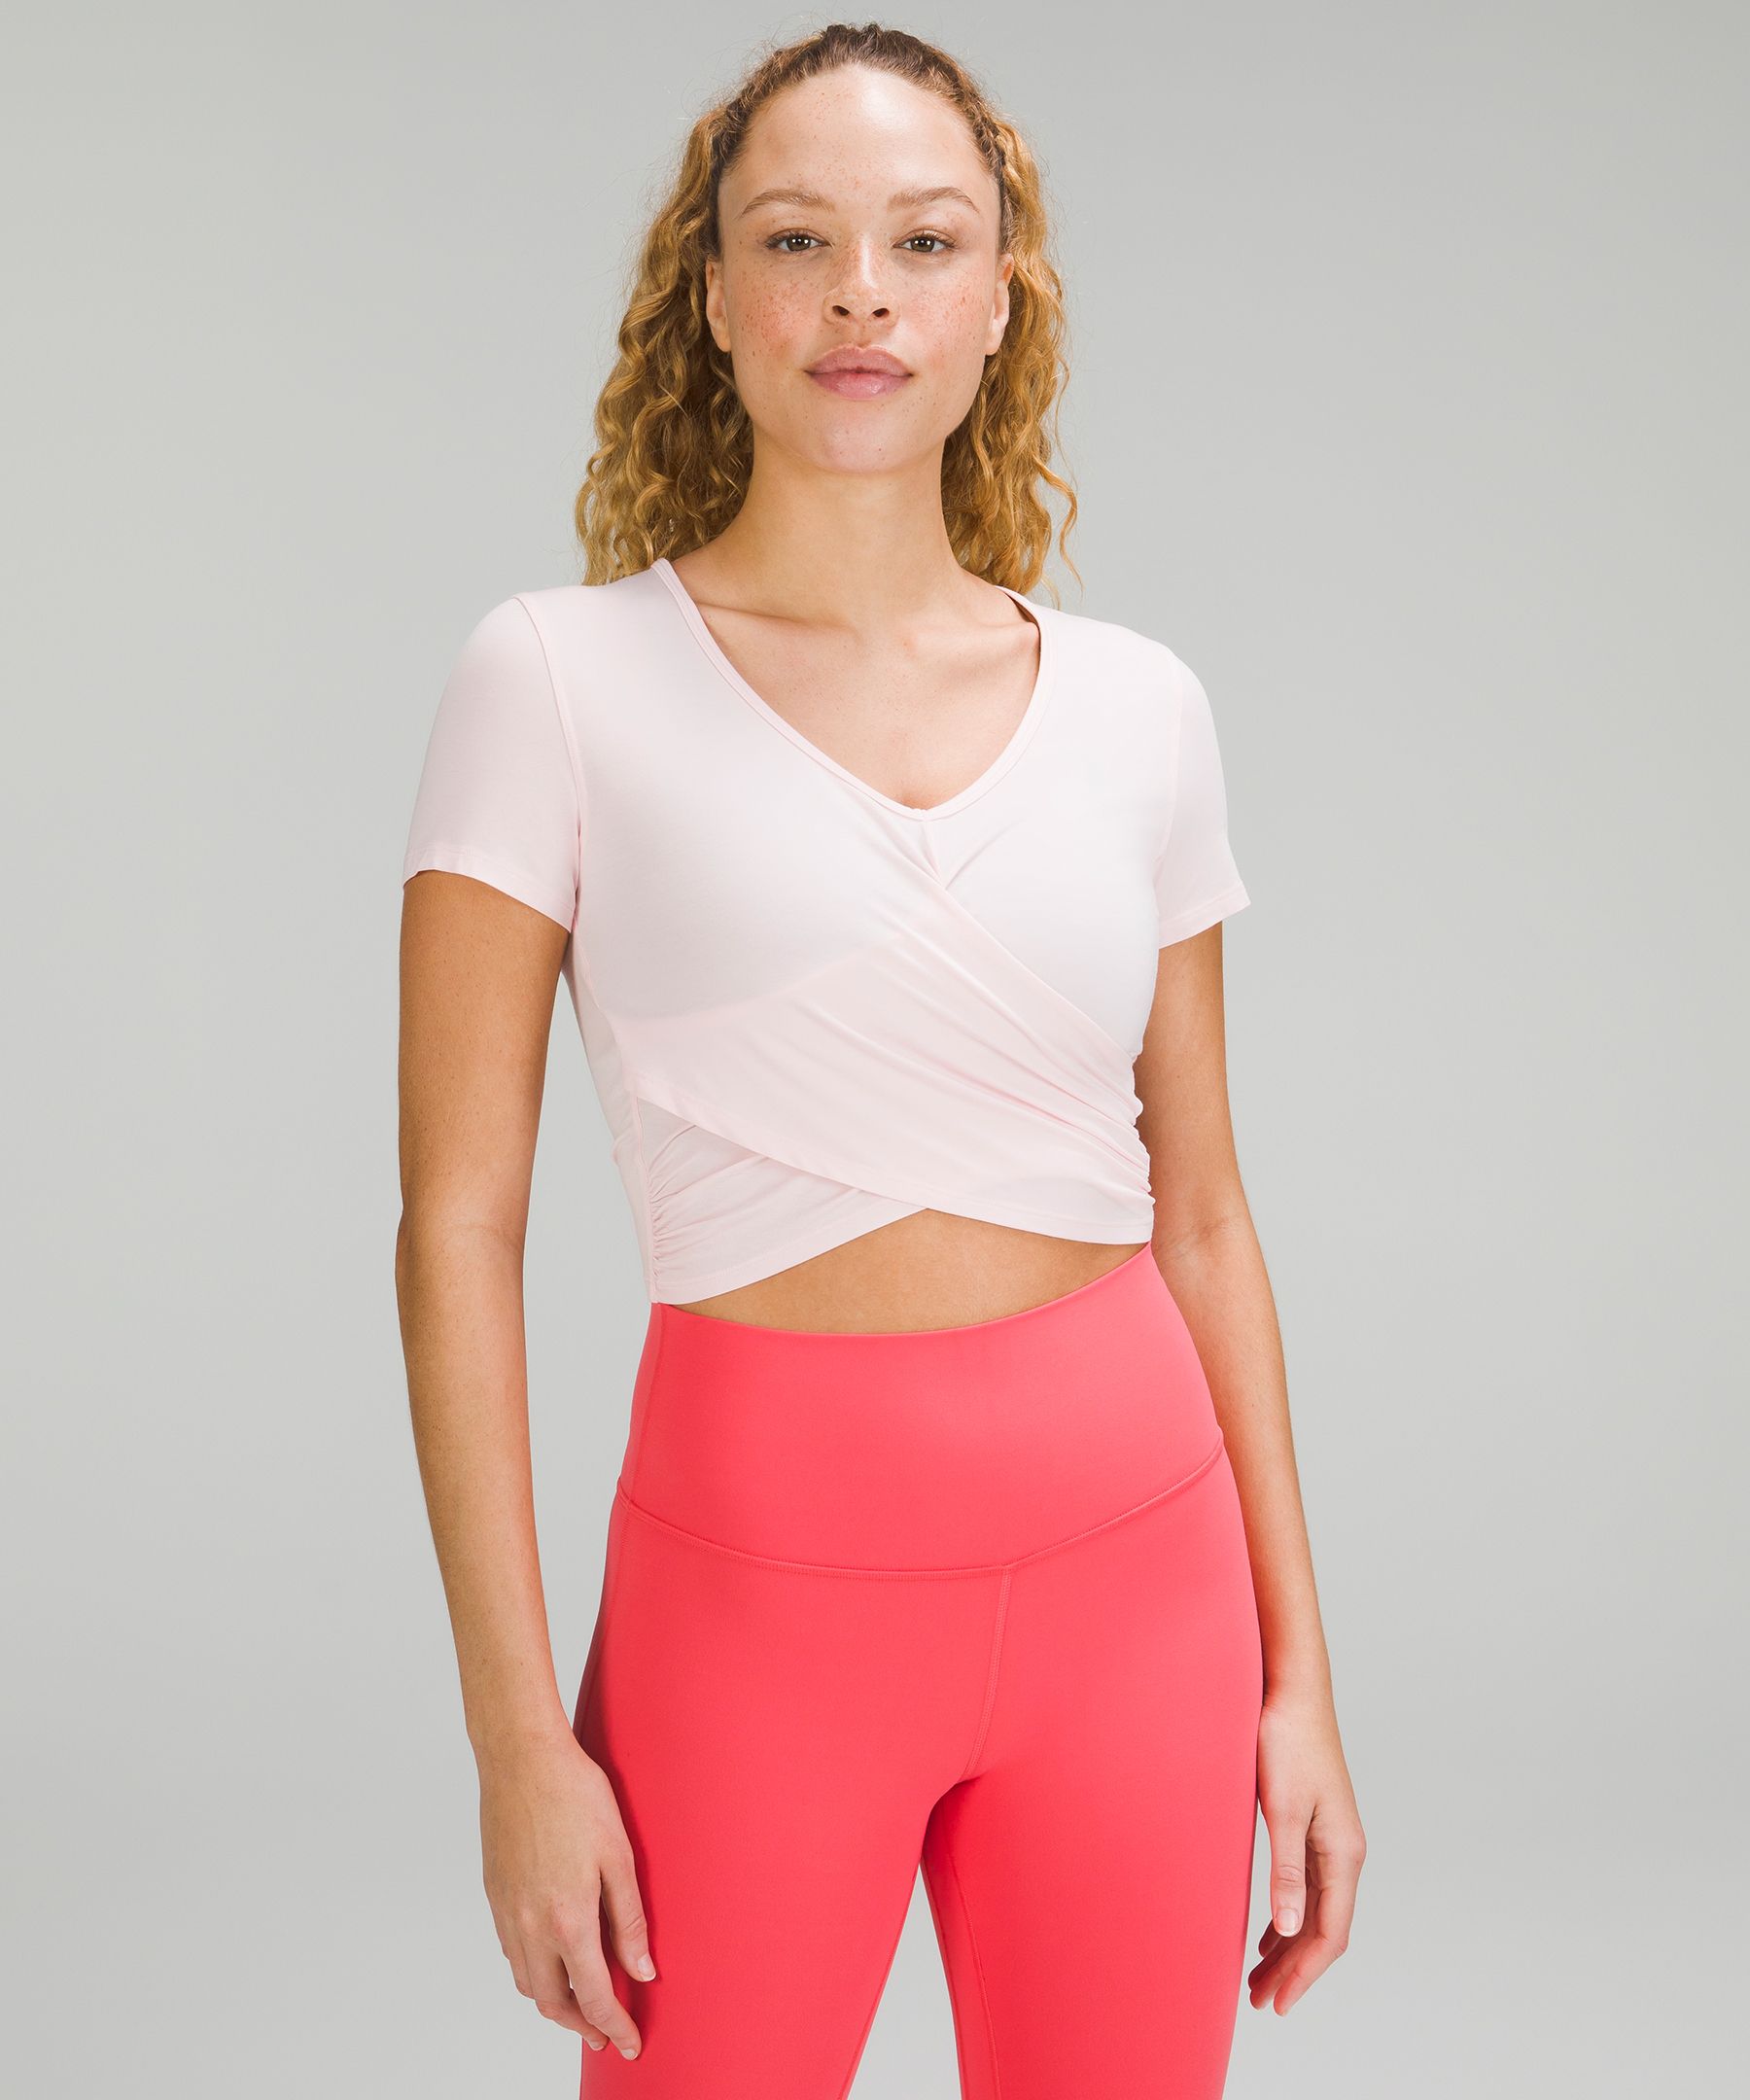 Lululemon Modal-Blend Yoga Short Sleeve Shirt - Lemon Sorbet